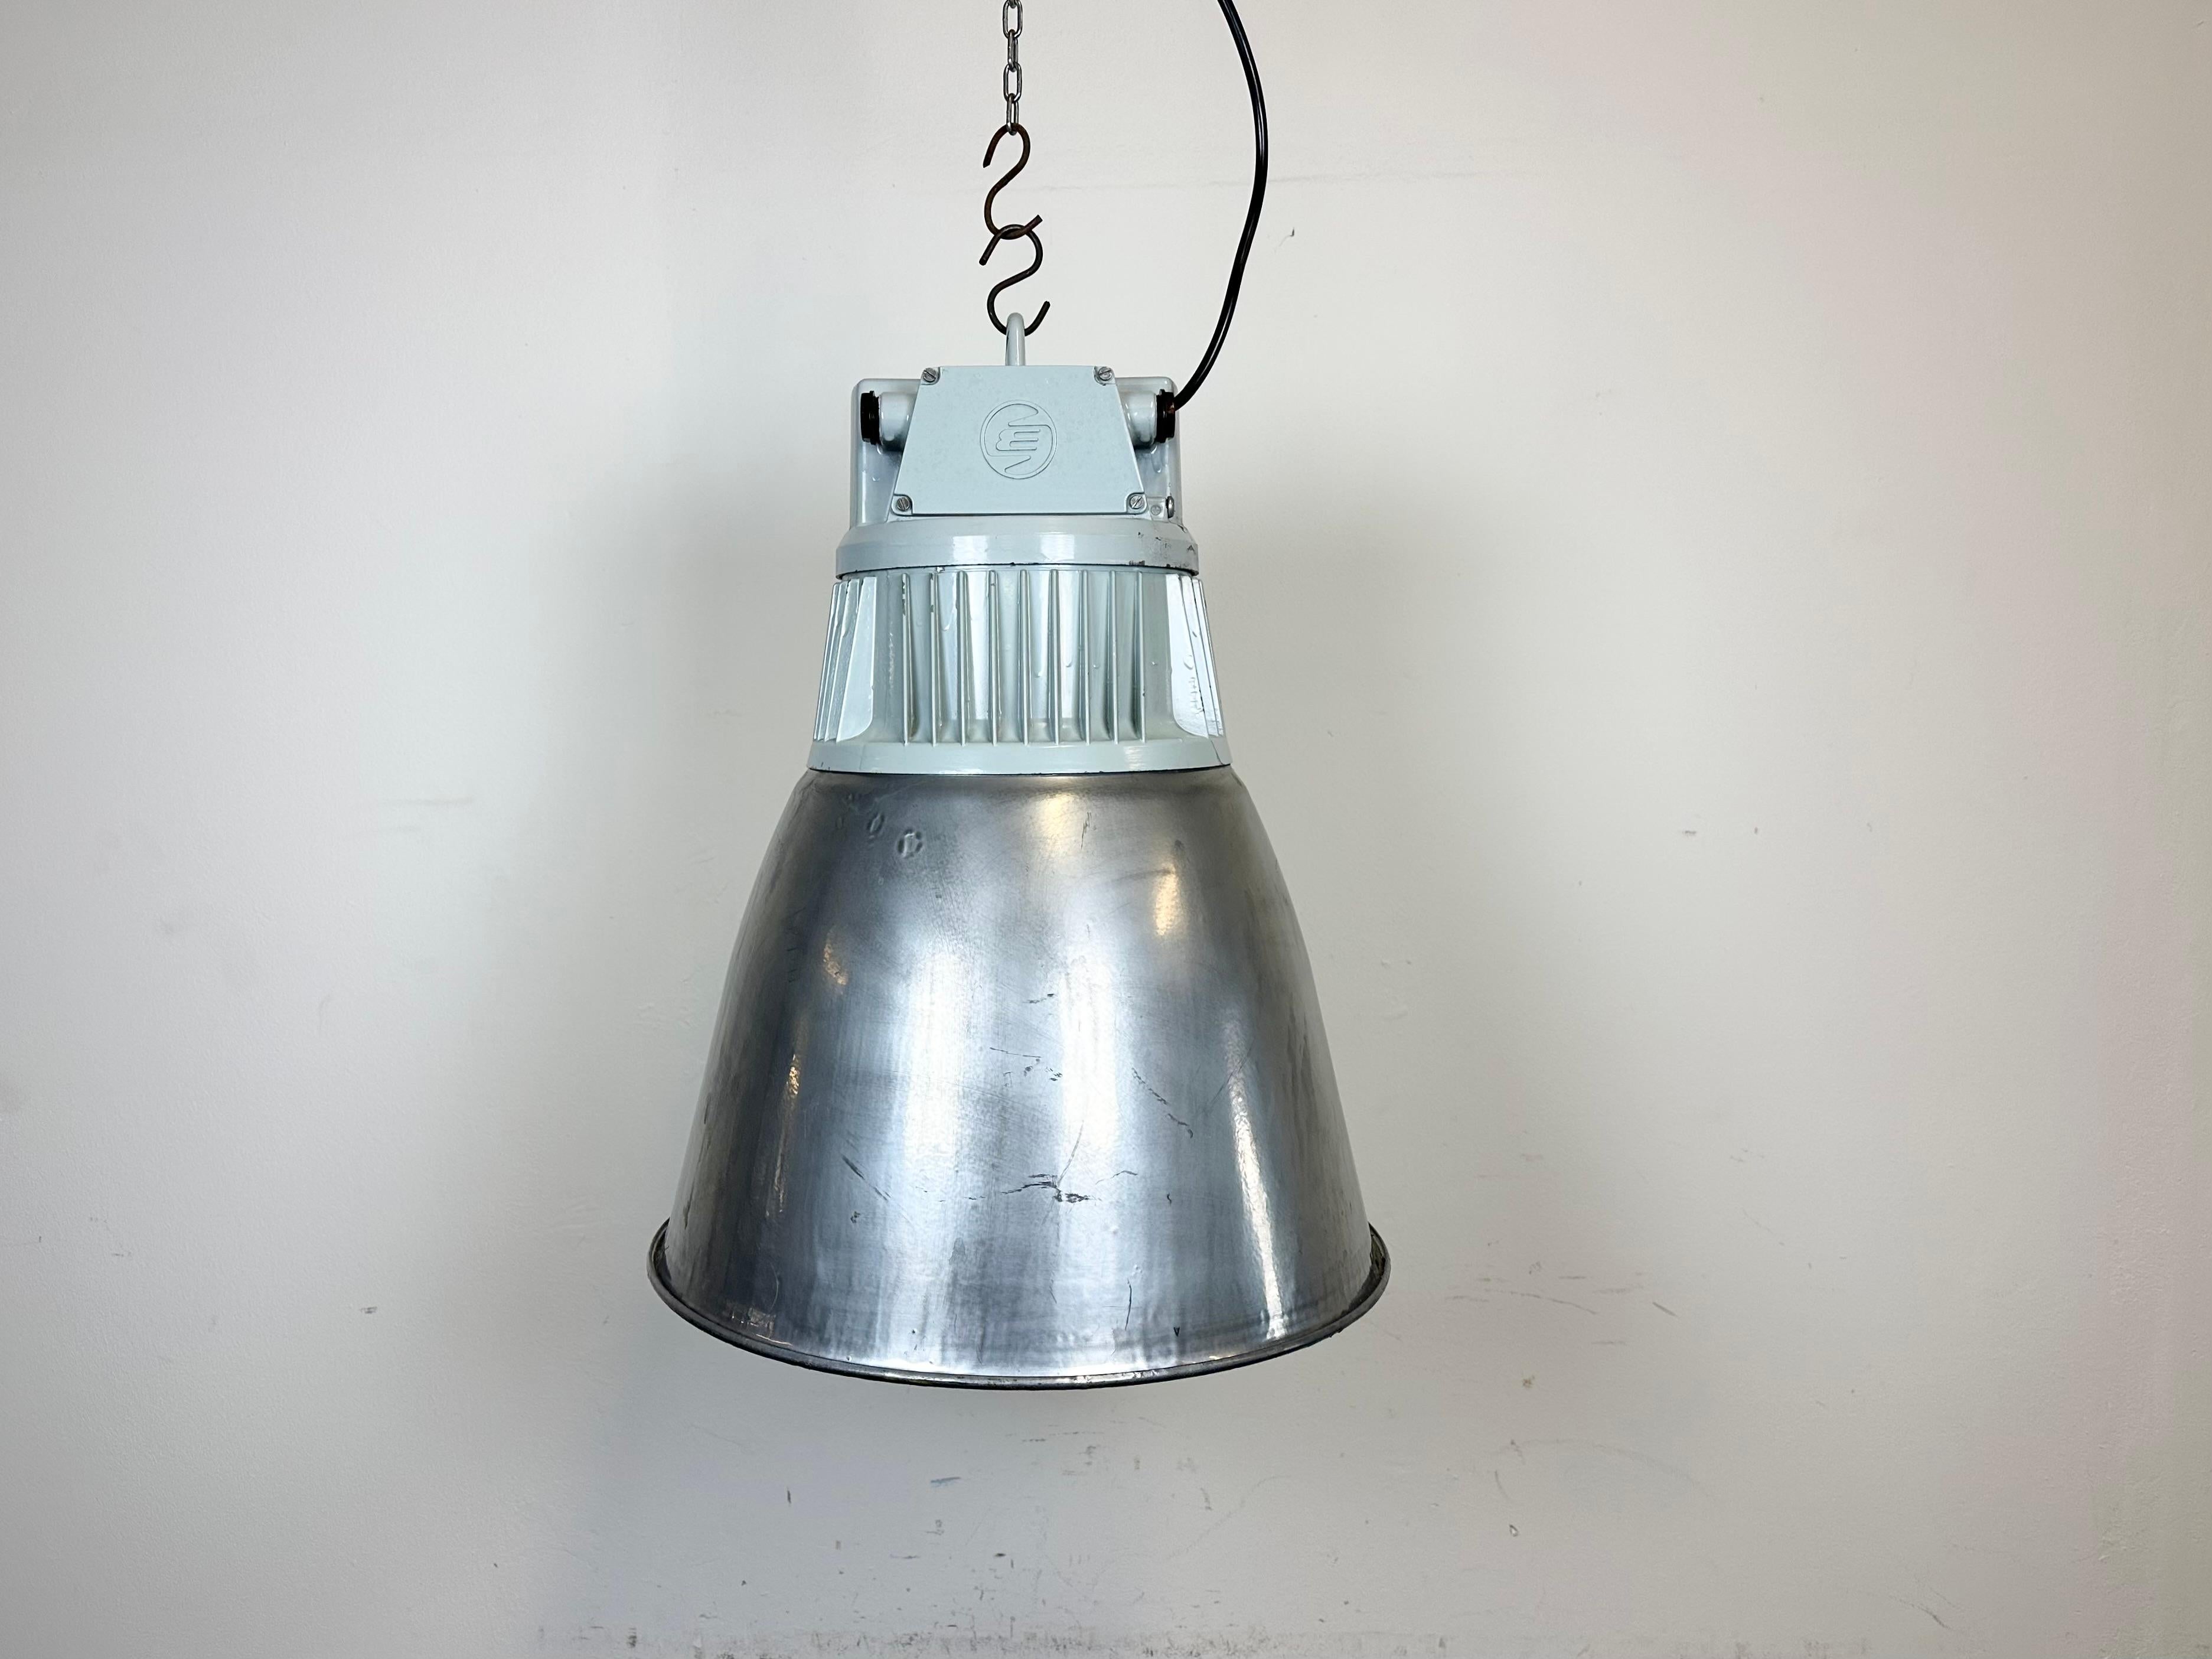 Lampe de hall d'usine industrielle
- Fabriqué par Elektrosvit
- Produit dans l'ancienne Tchécoslovaquie dans les années 1970
- Abat-jour en fer argenté
- Plateau en aluminium moulé gris
- Poids : 5,8 kg
- Diamètre : 43 cm
- La nouvelle douille en